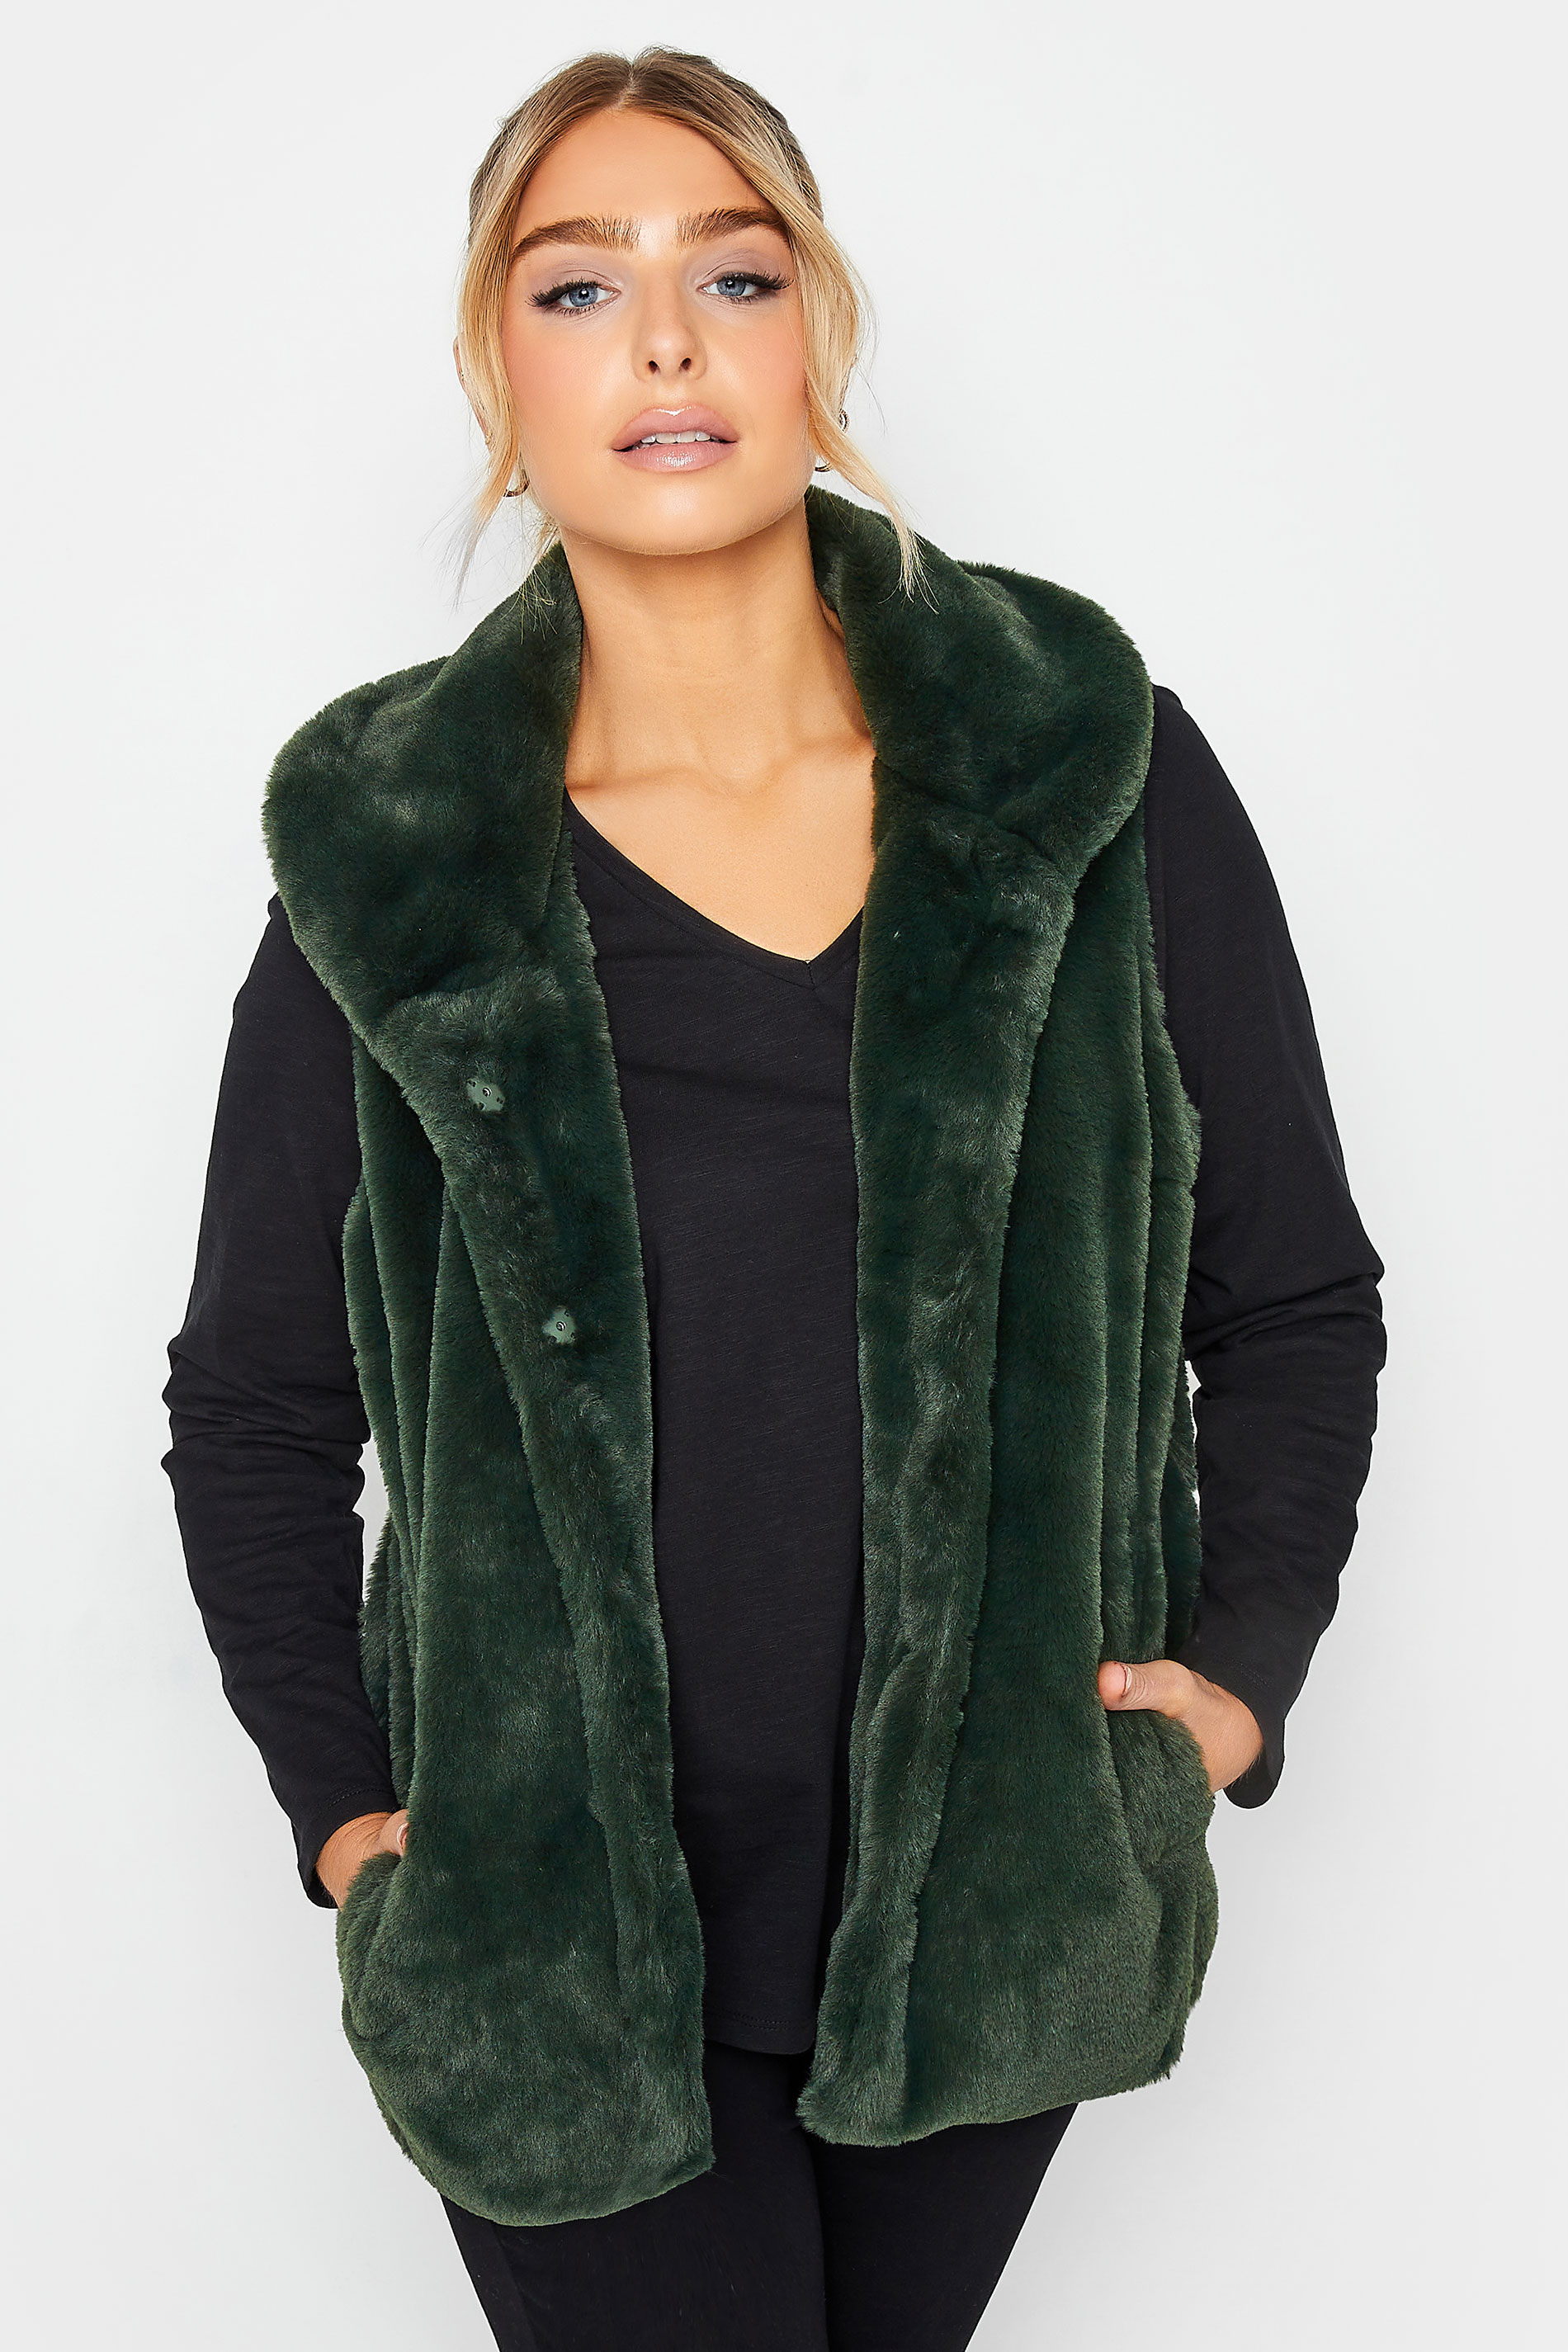 M&Co Dark Green Faux Fur Gilet | M&Co 2